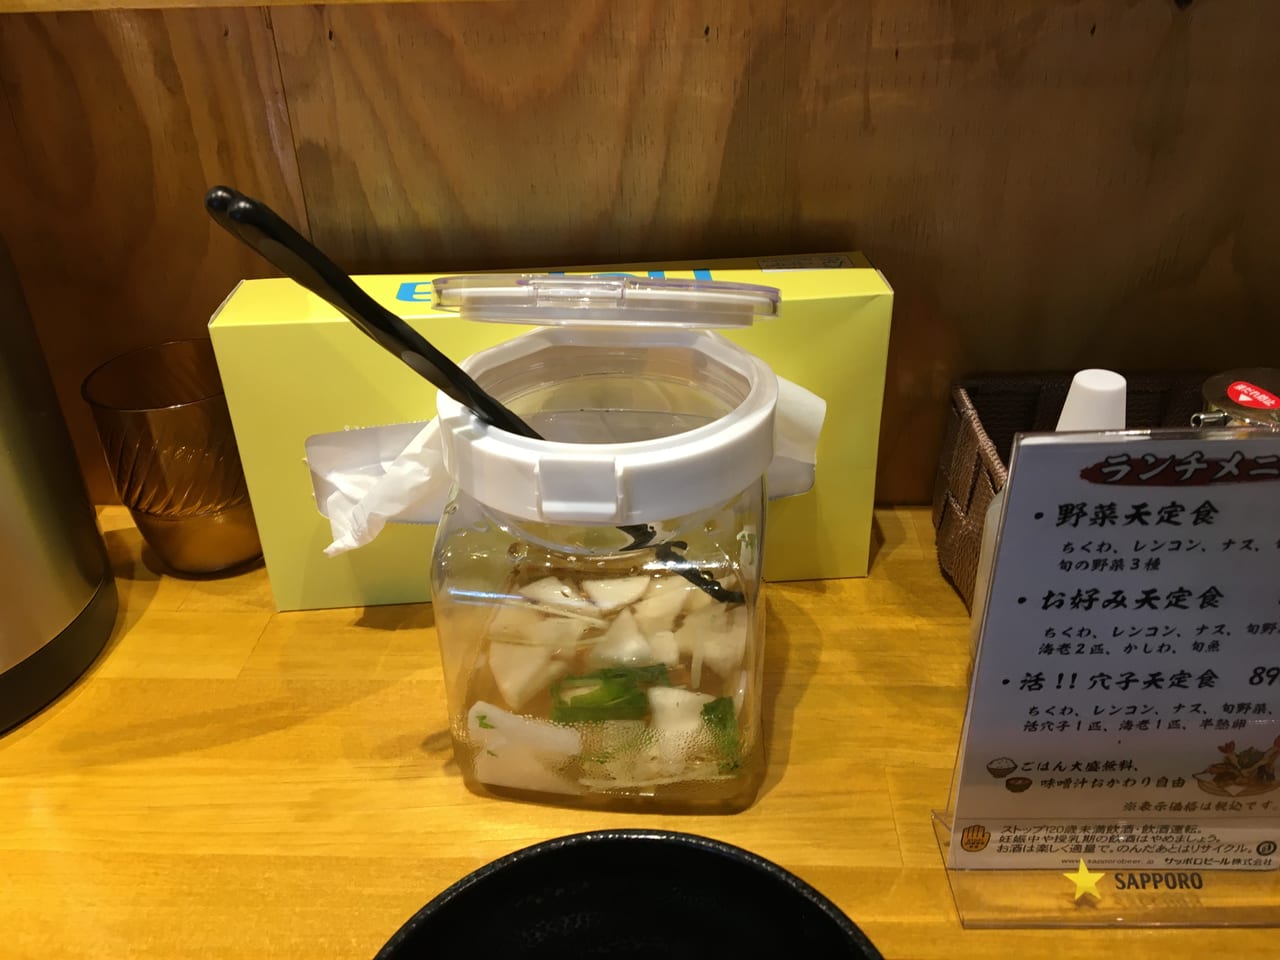 天ぷらとワイン 小島 大曽根店